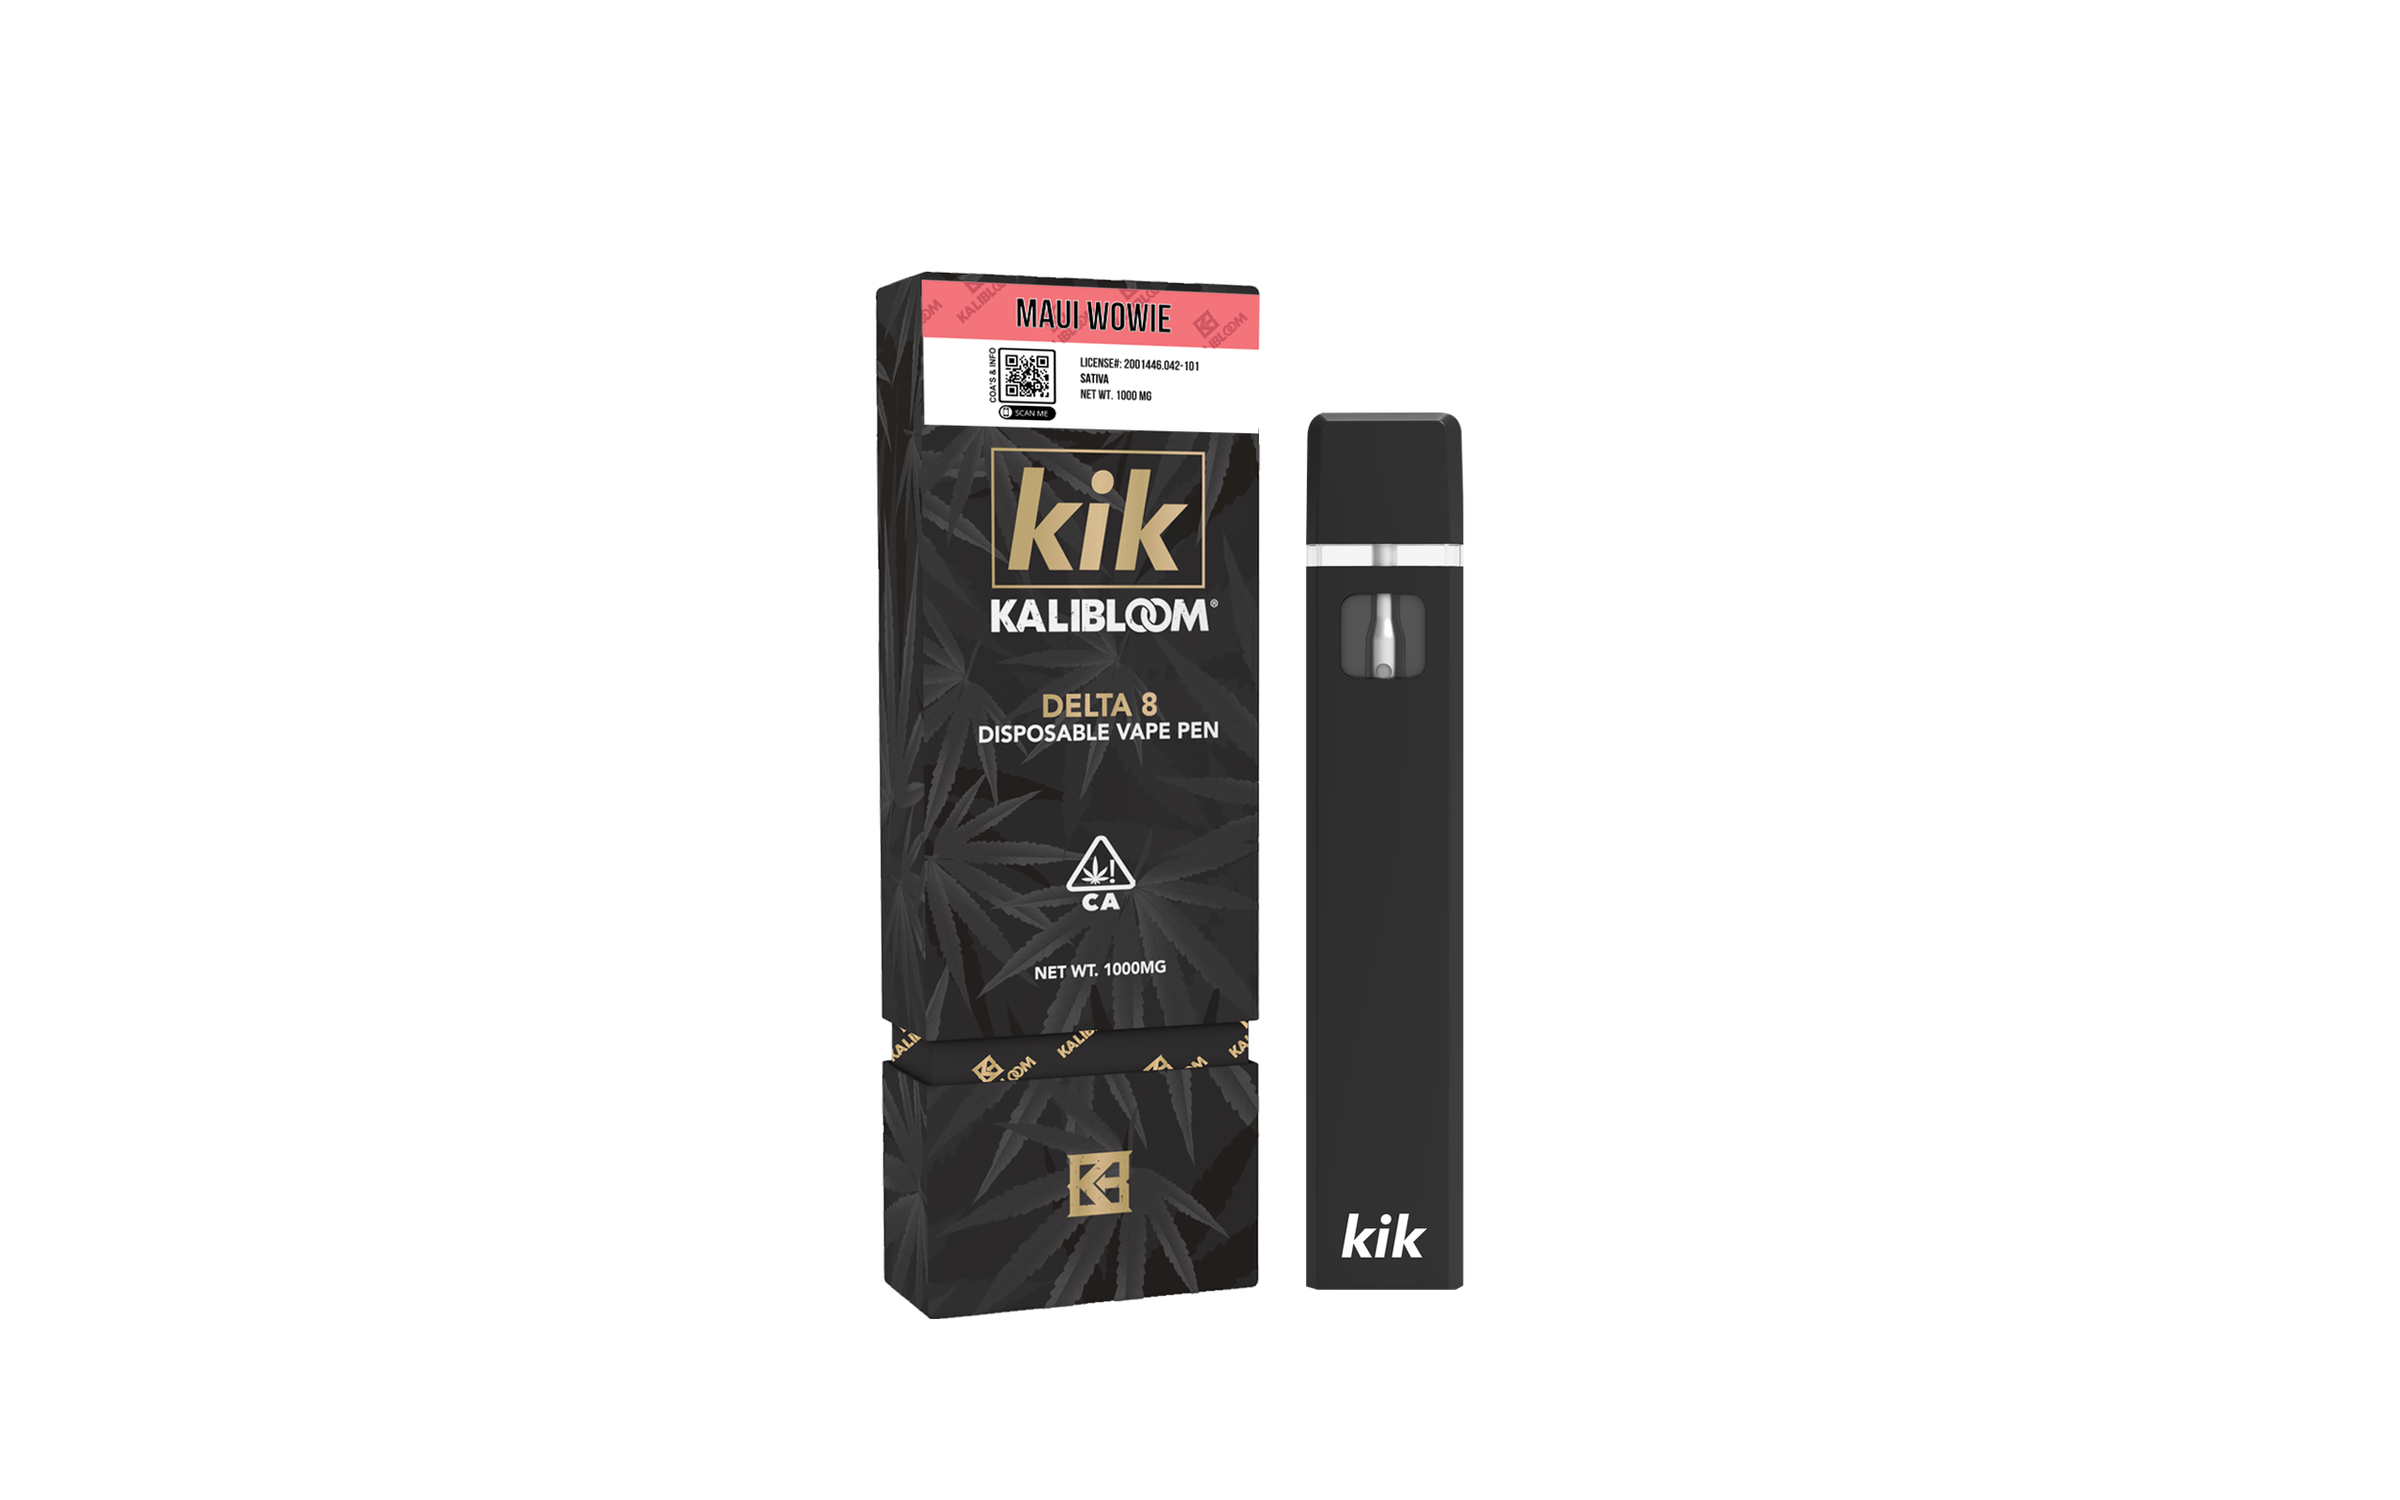 Kalibloom Kik Delta 8 THC Disposable Vape, 1 Gram, 1000MG - Delta 8 Delta  10